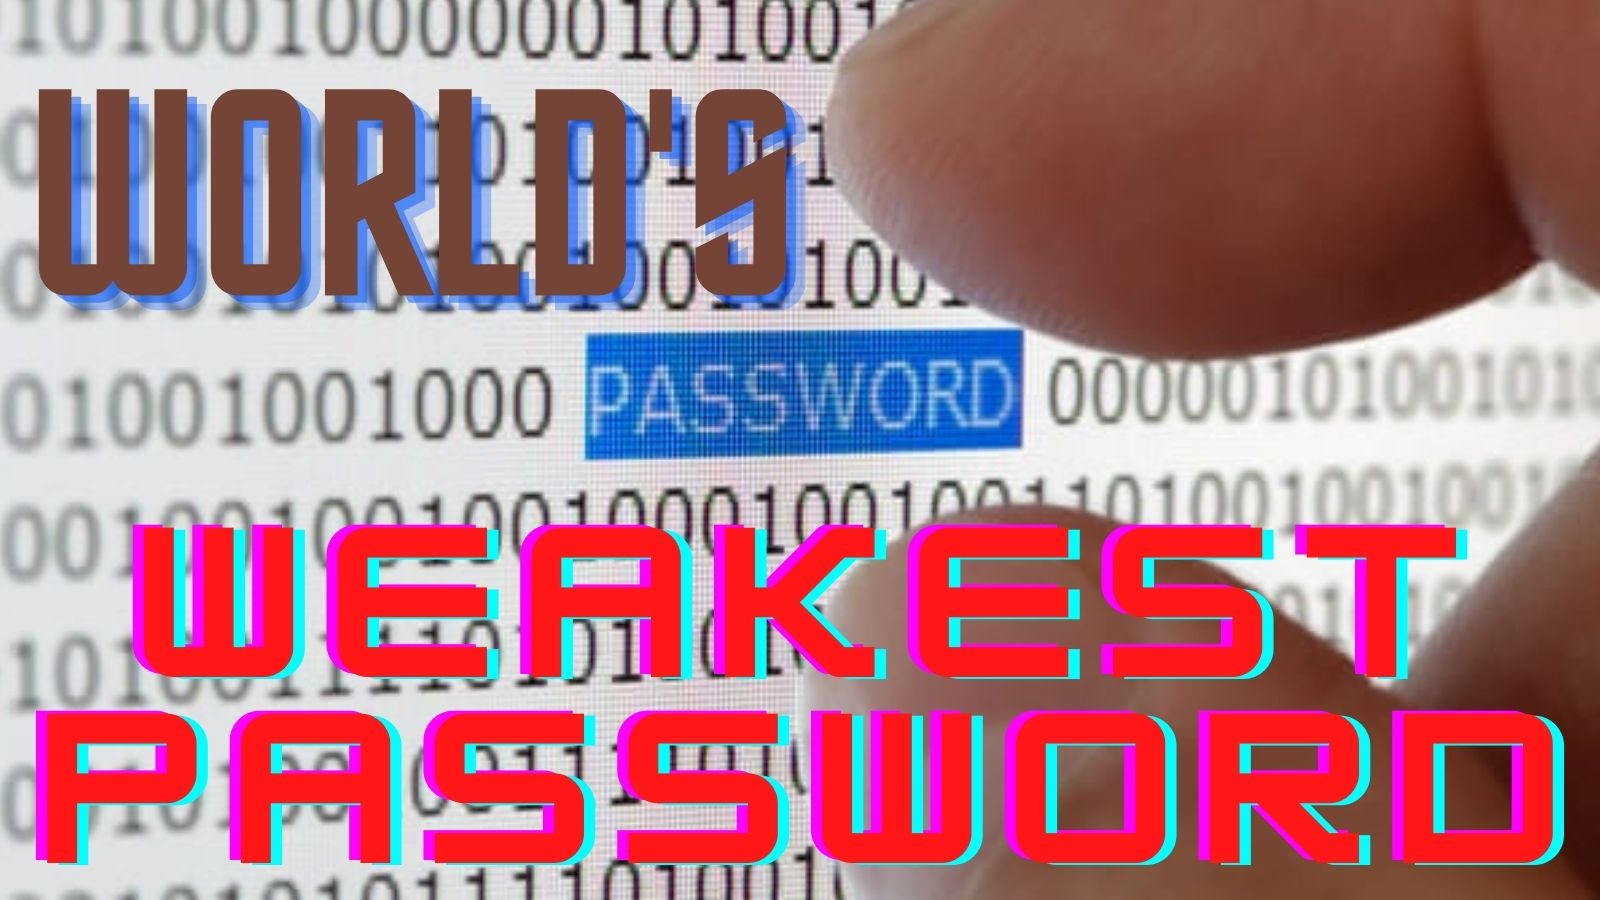 Weakest Password